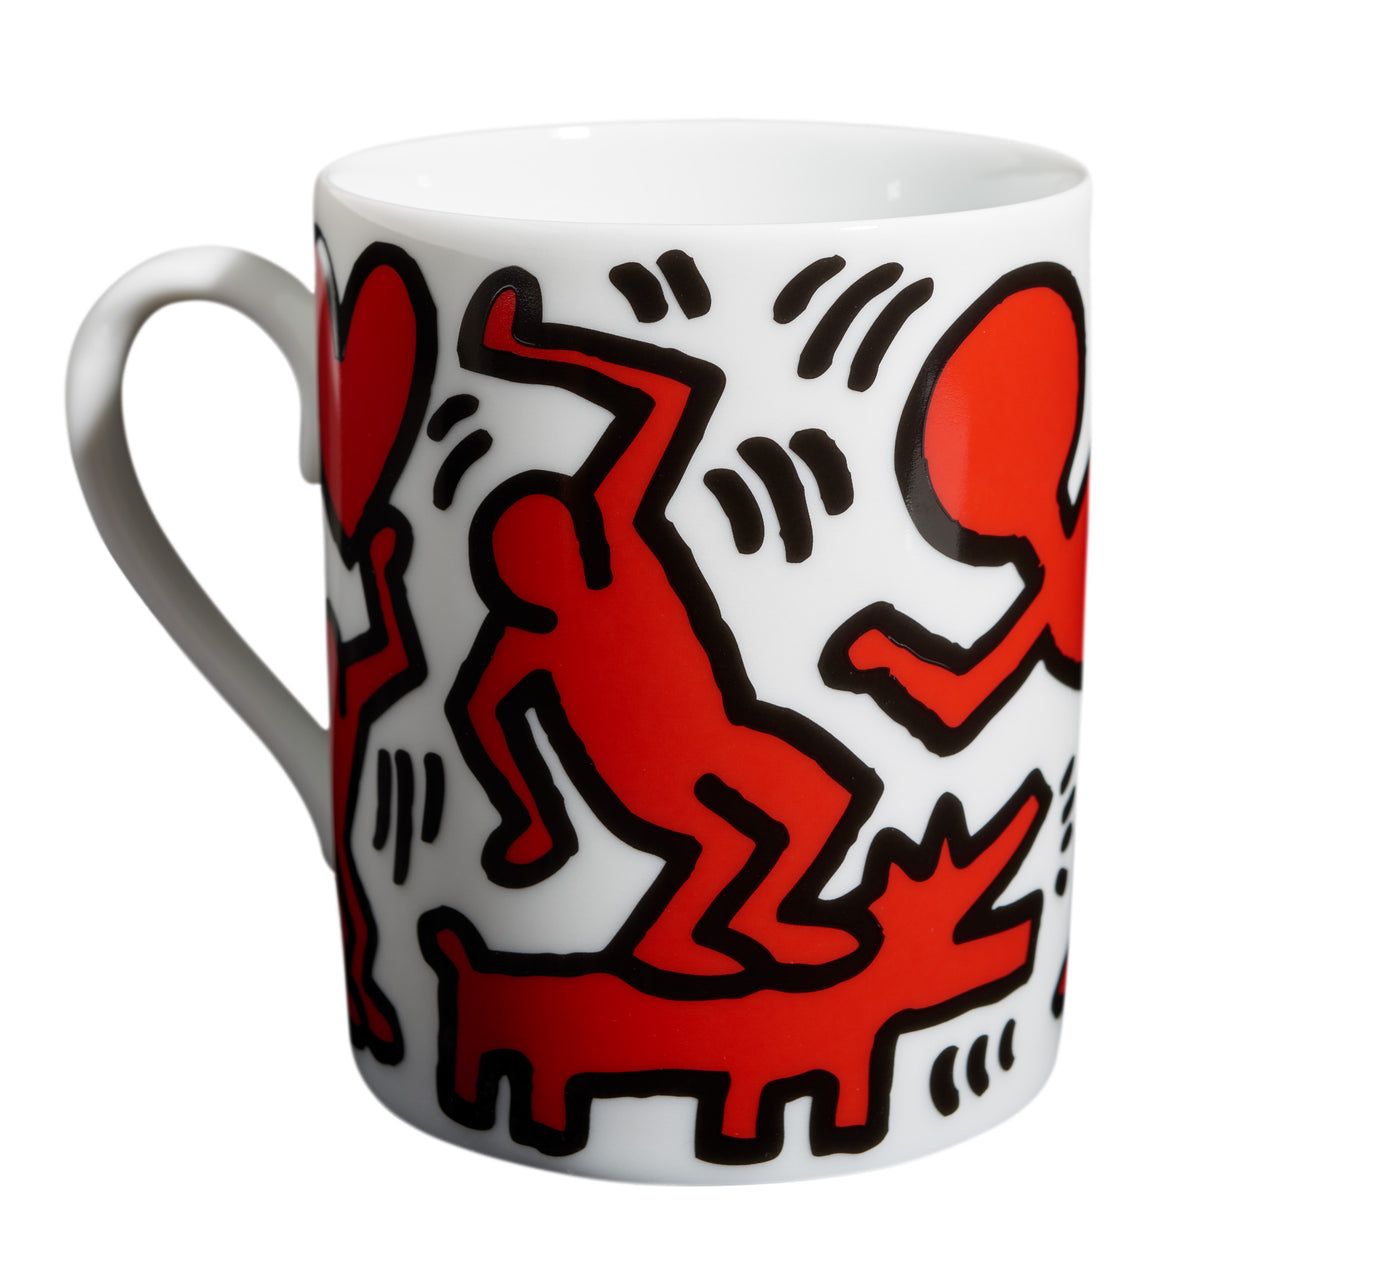 Keith Haring Mug Red/White